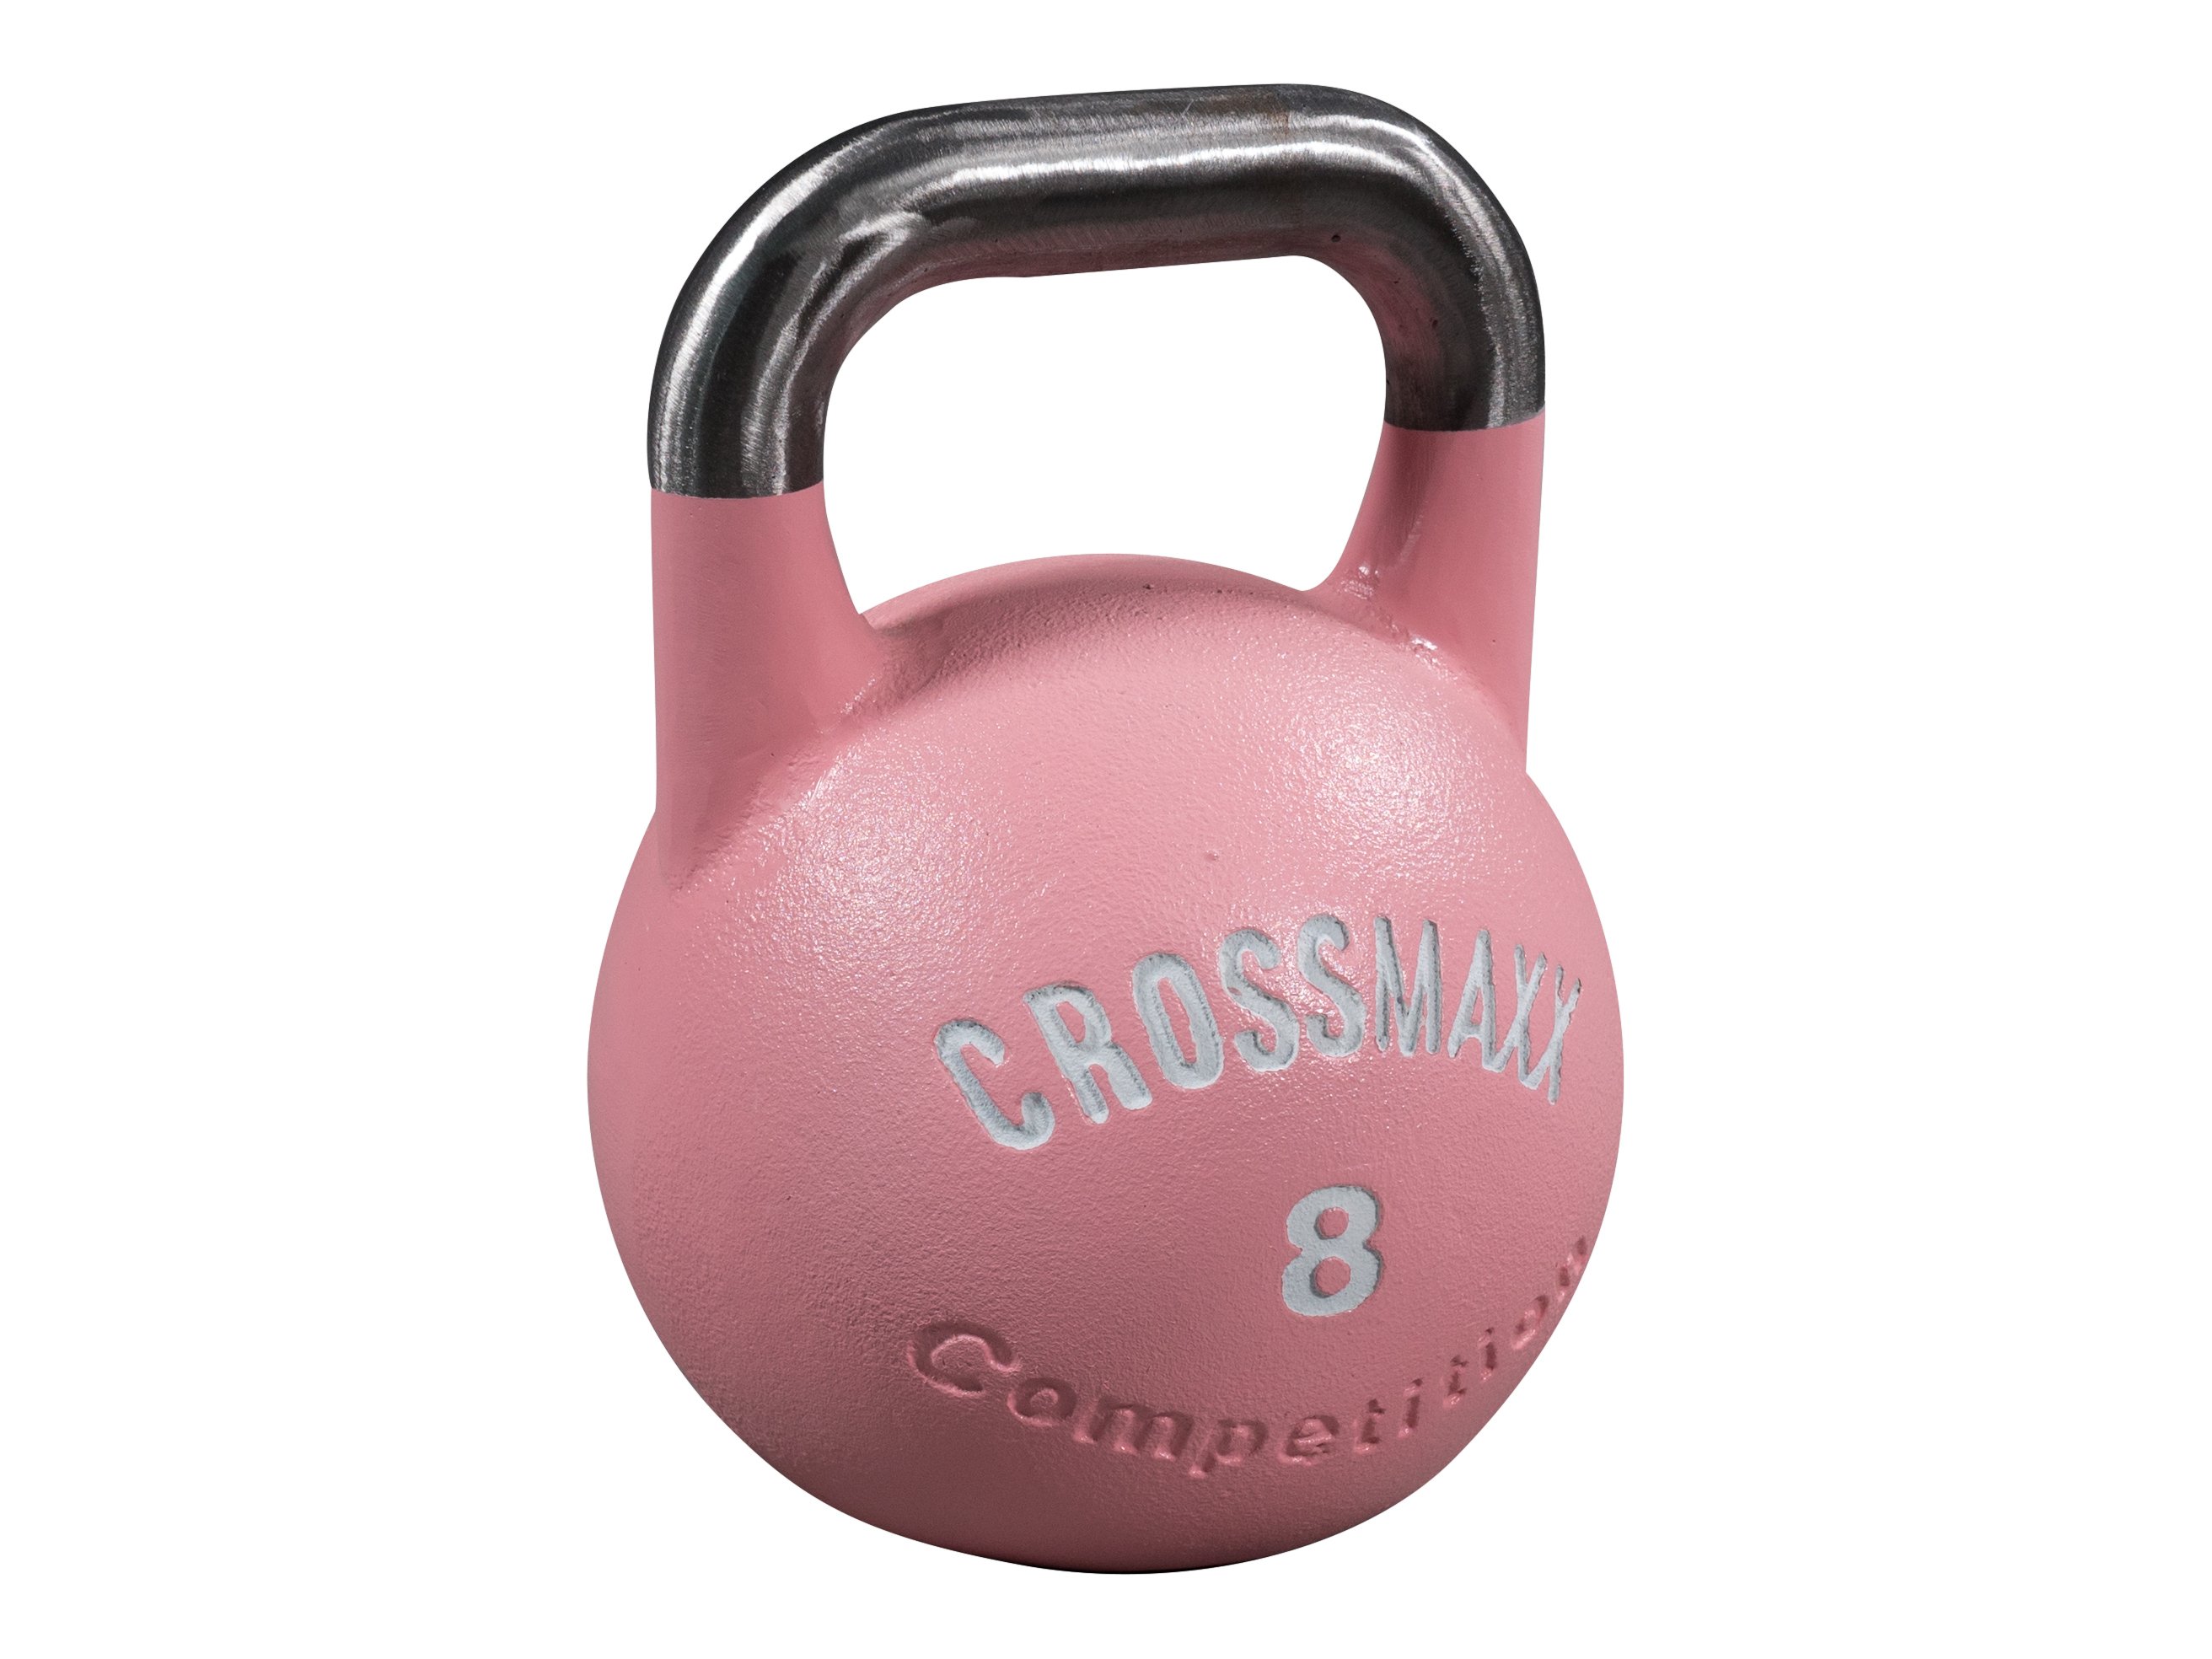 Crossmaxx Competition Kettlebell 8 kg - Brugt